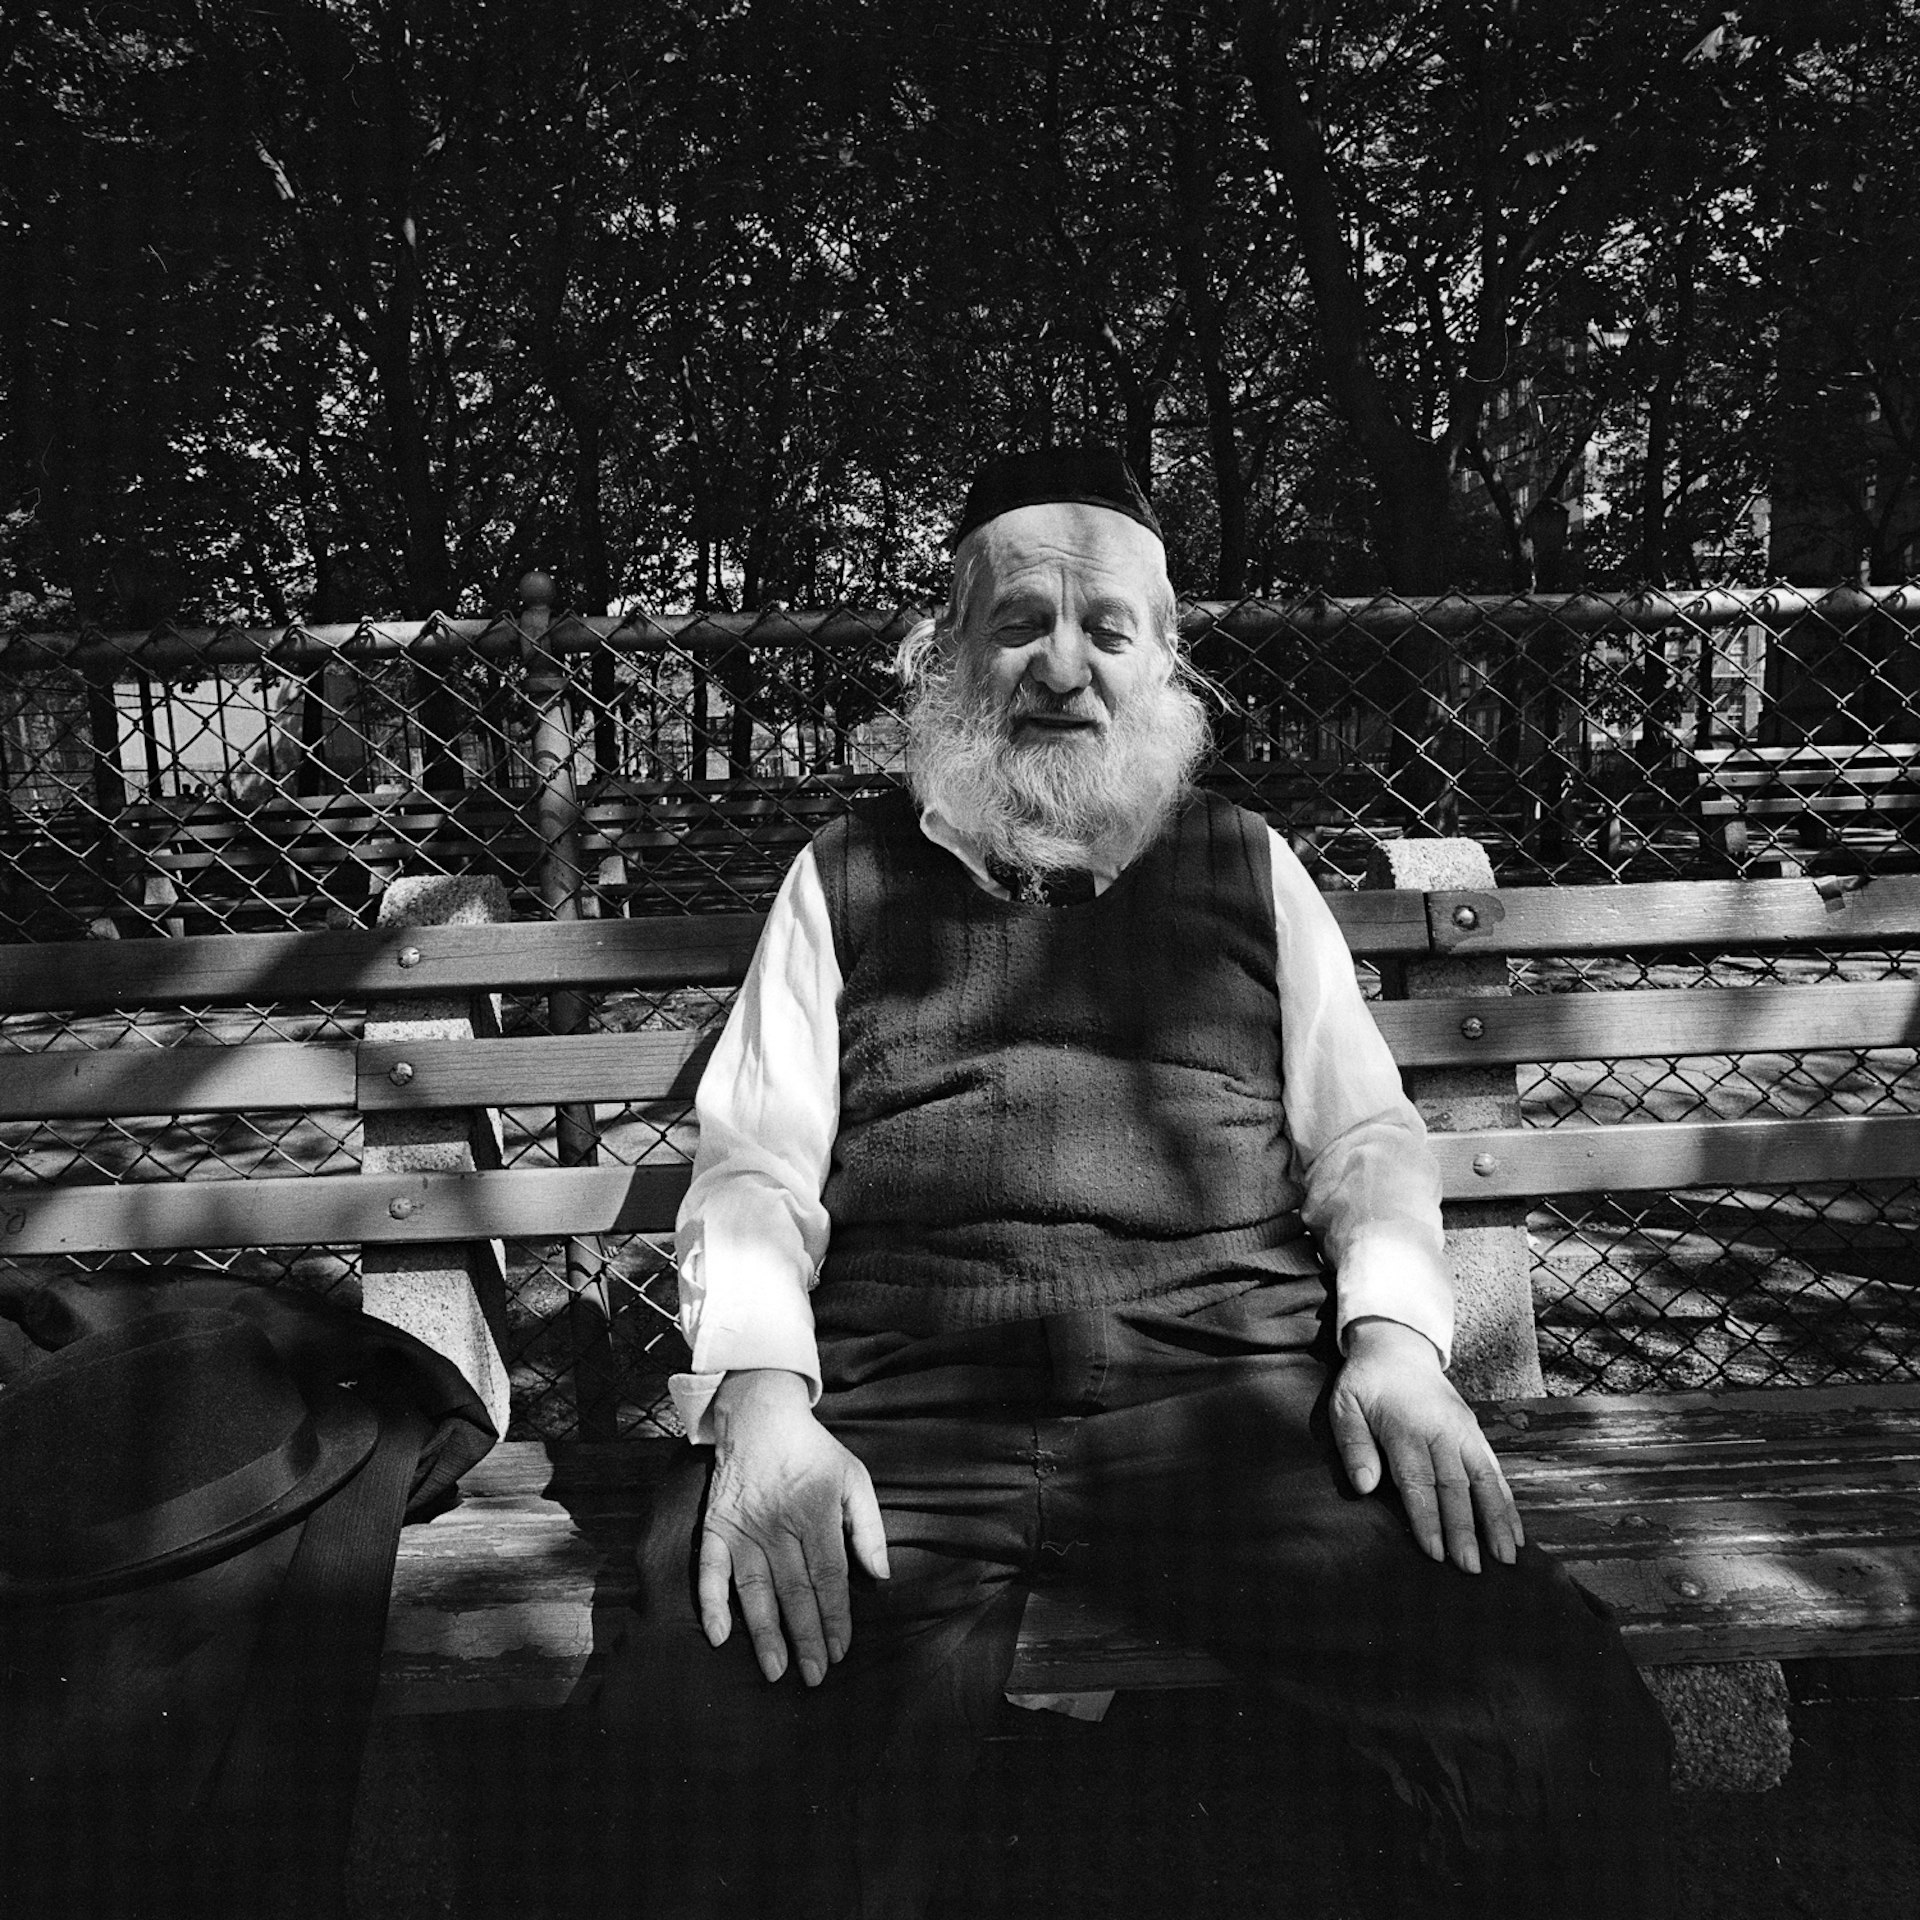 White bearded man on park bench in dappled sunlight NY, NY May 1977